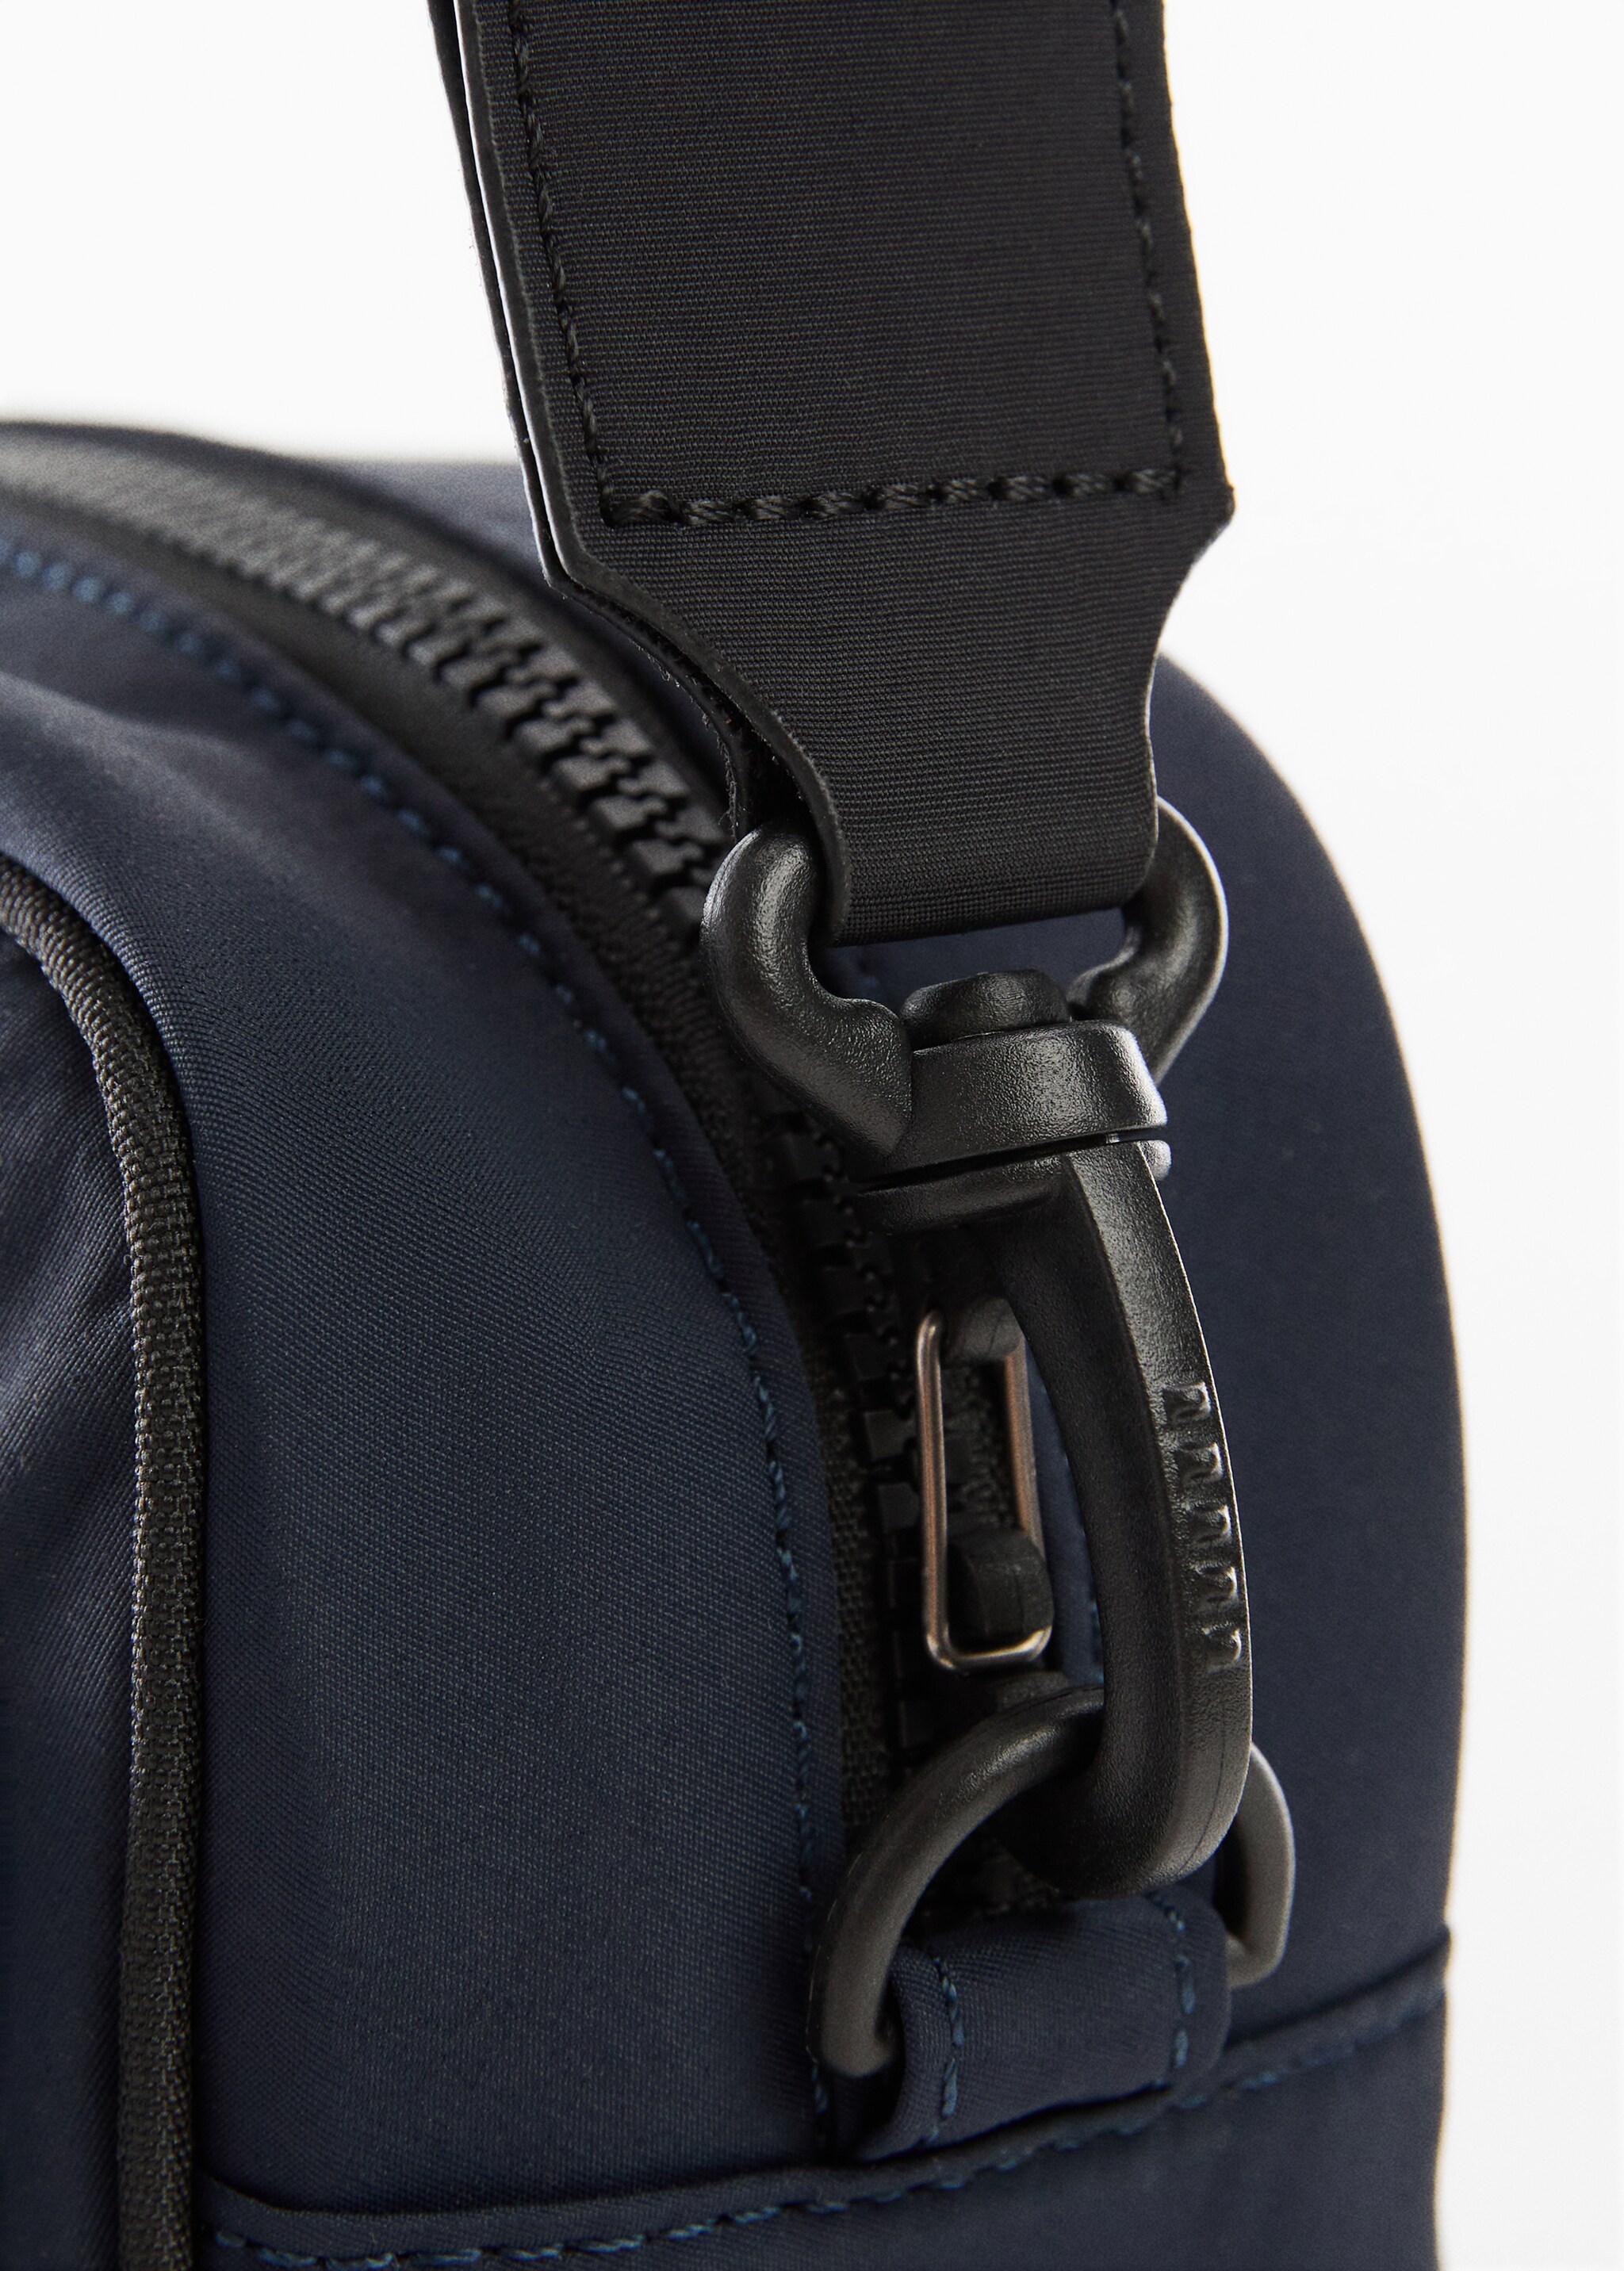 Zip-pocket shoulder strap - Details of the article 1